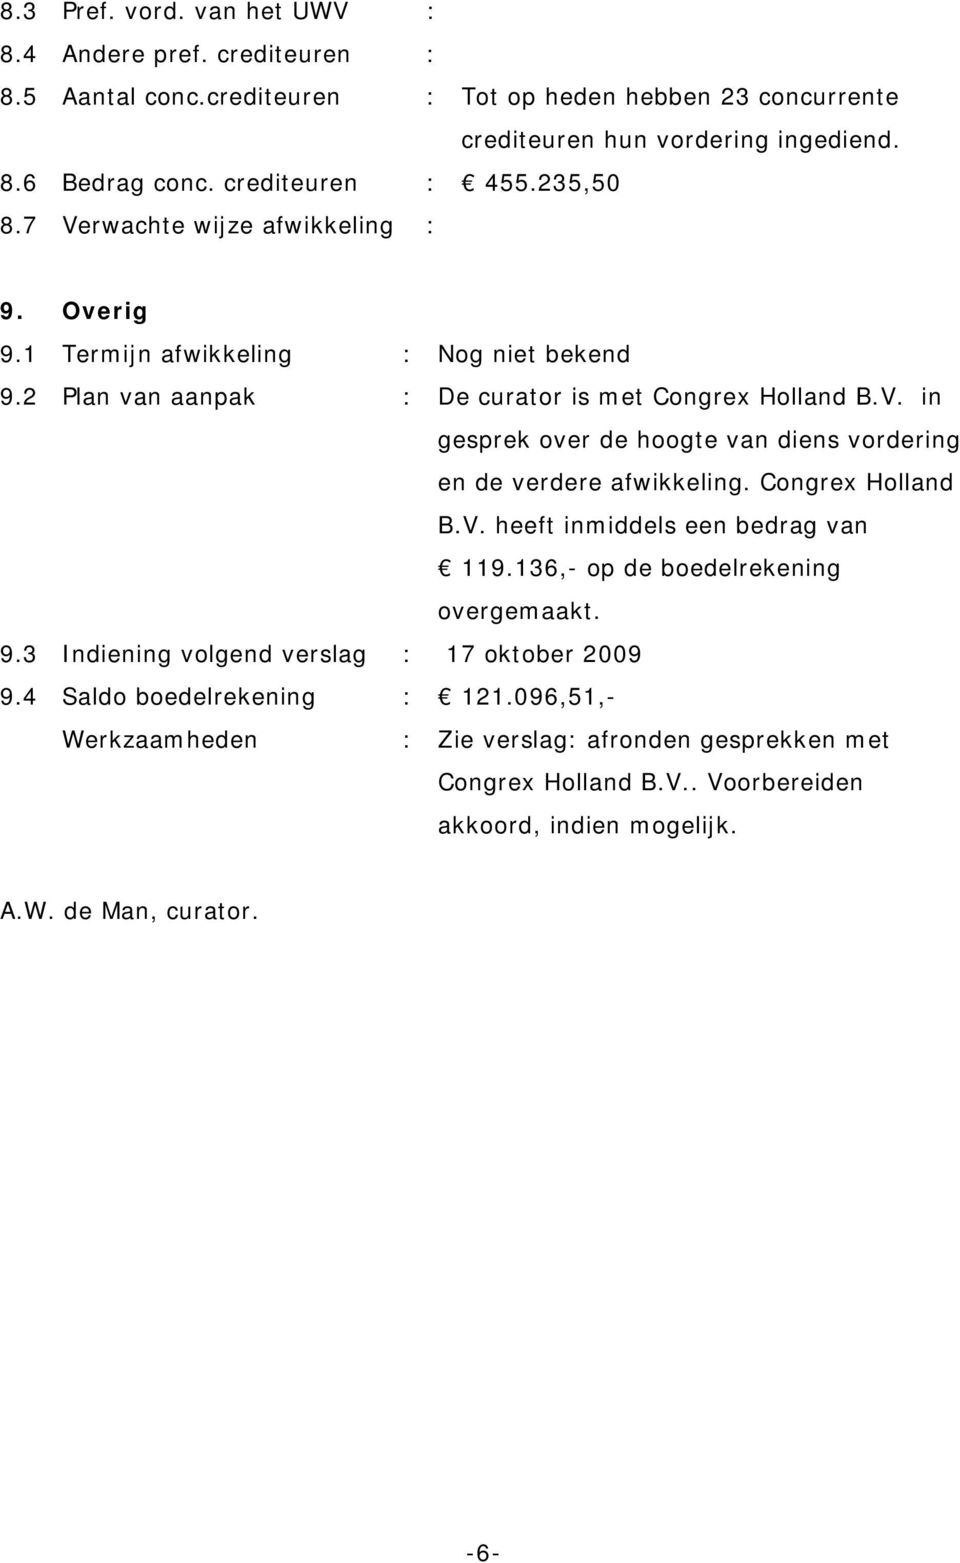 Congrex Holland B.V. heeft inmiddels een bedrag van 119.136,- op de boedelrekening overgemaakt. 9.3 Indiening volgend verslag : 17 oktober 2009 9.4 Saldo boedelrekening : 121.